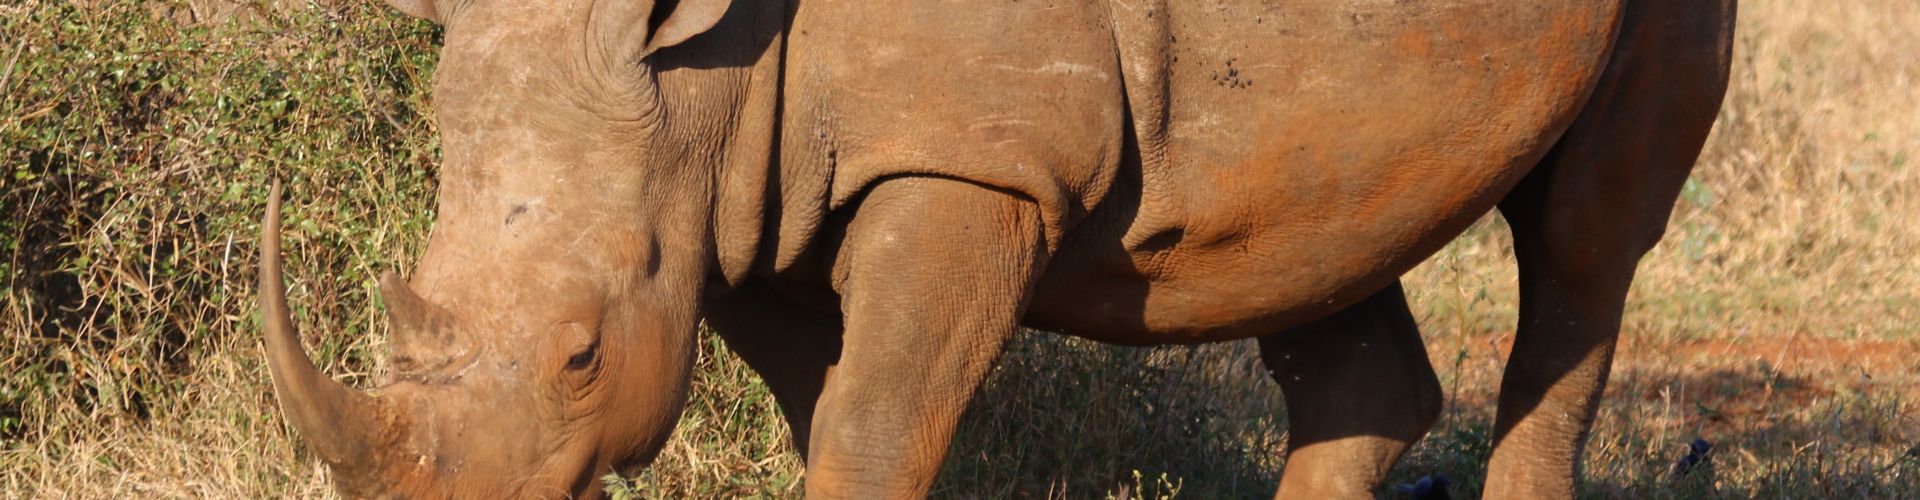 Ritratto ravvicinato di un rinoceronte, una delle specie più minacciate al mondo